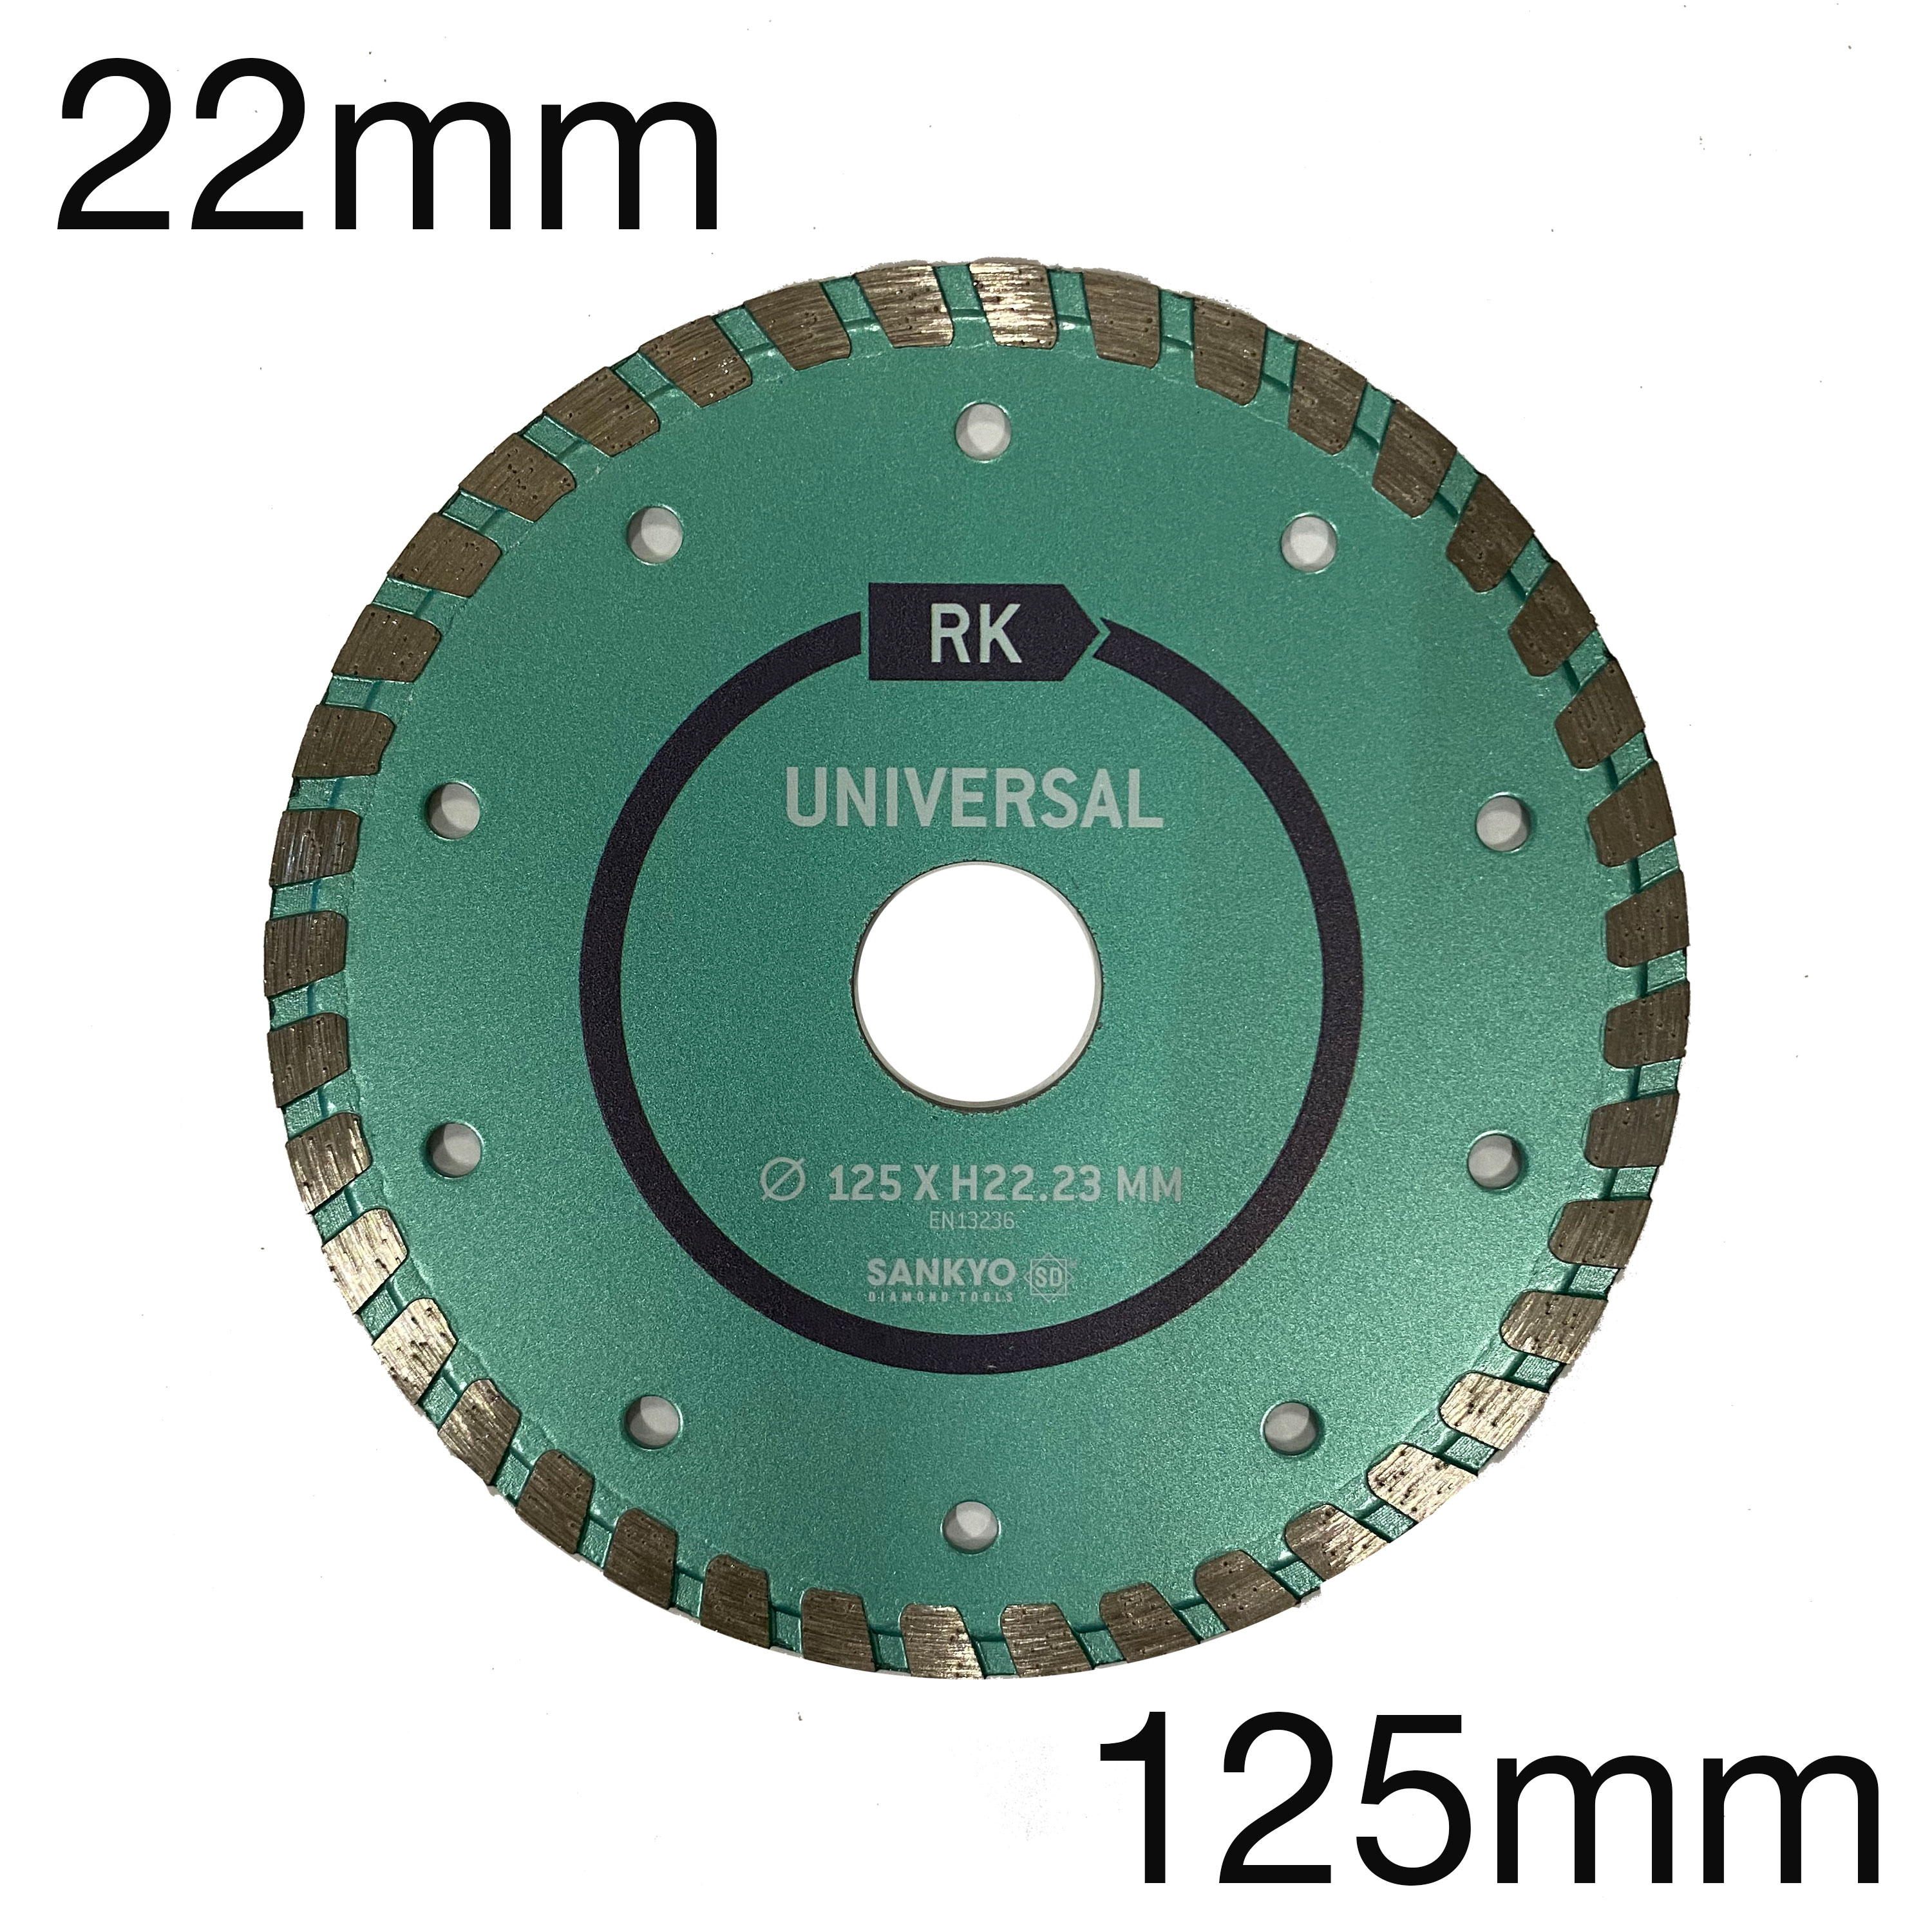 Diamant-Trockentrennscheibe RK Universal, lasergeschweisst, 125 x 22mm